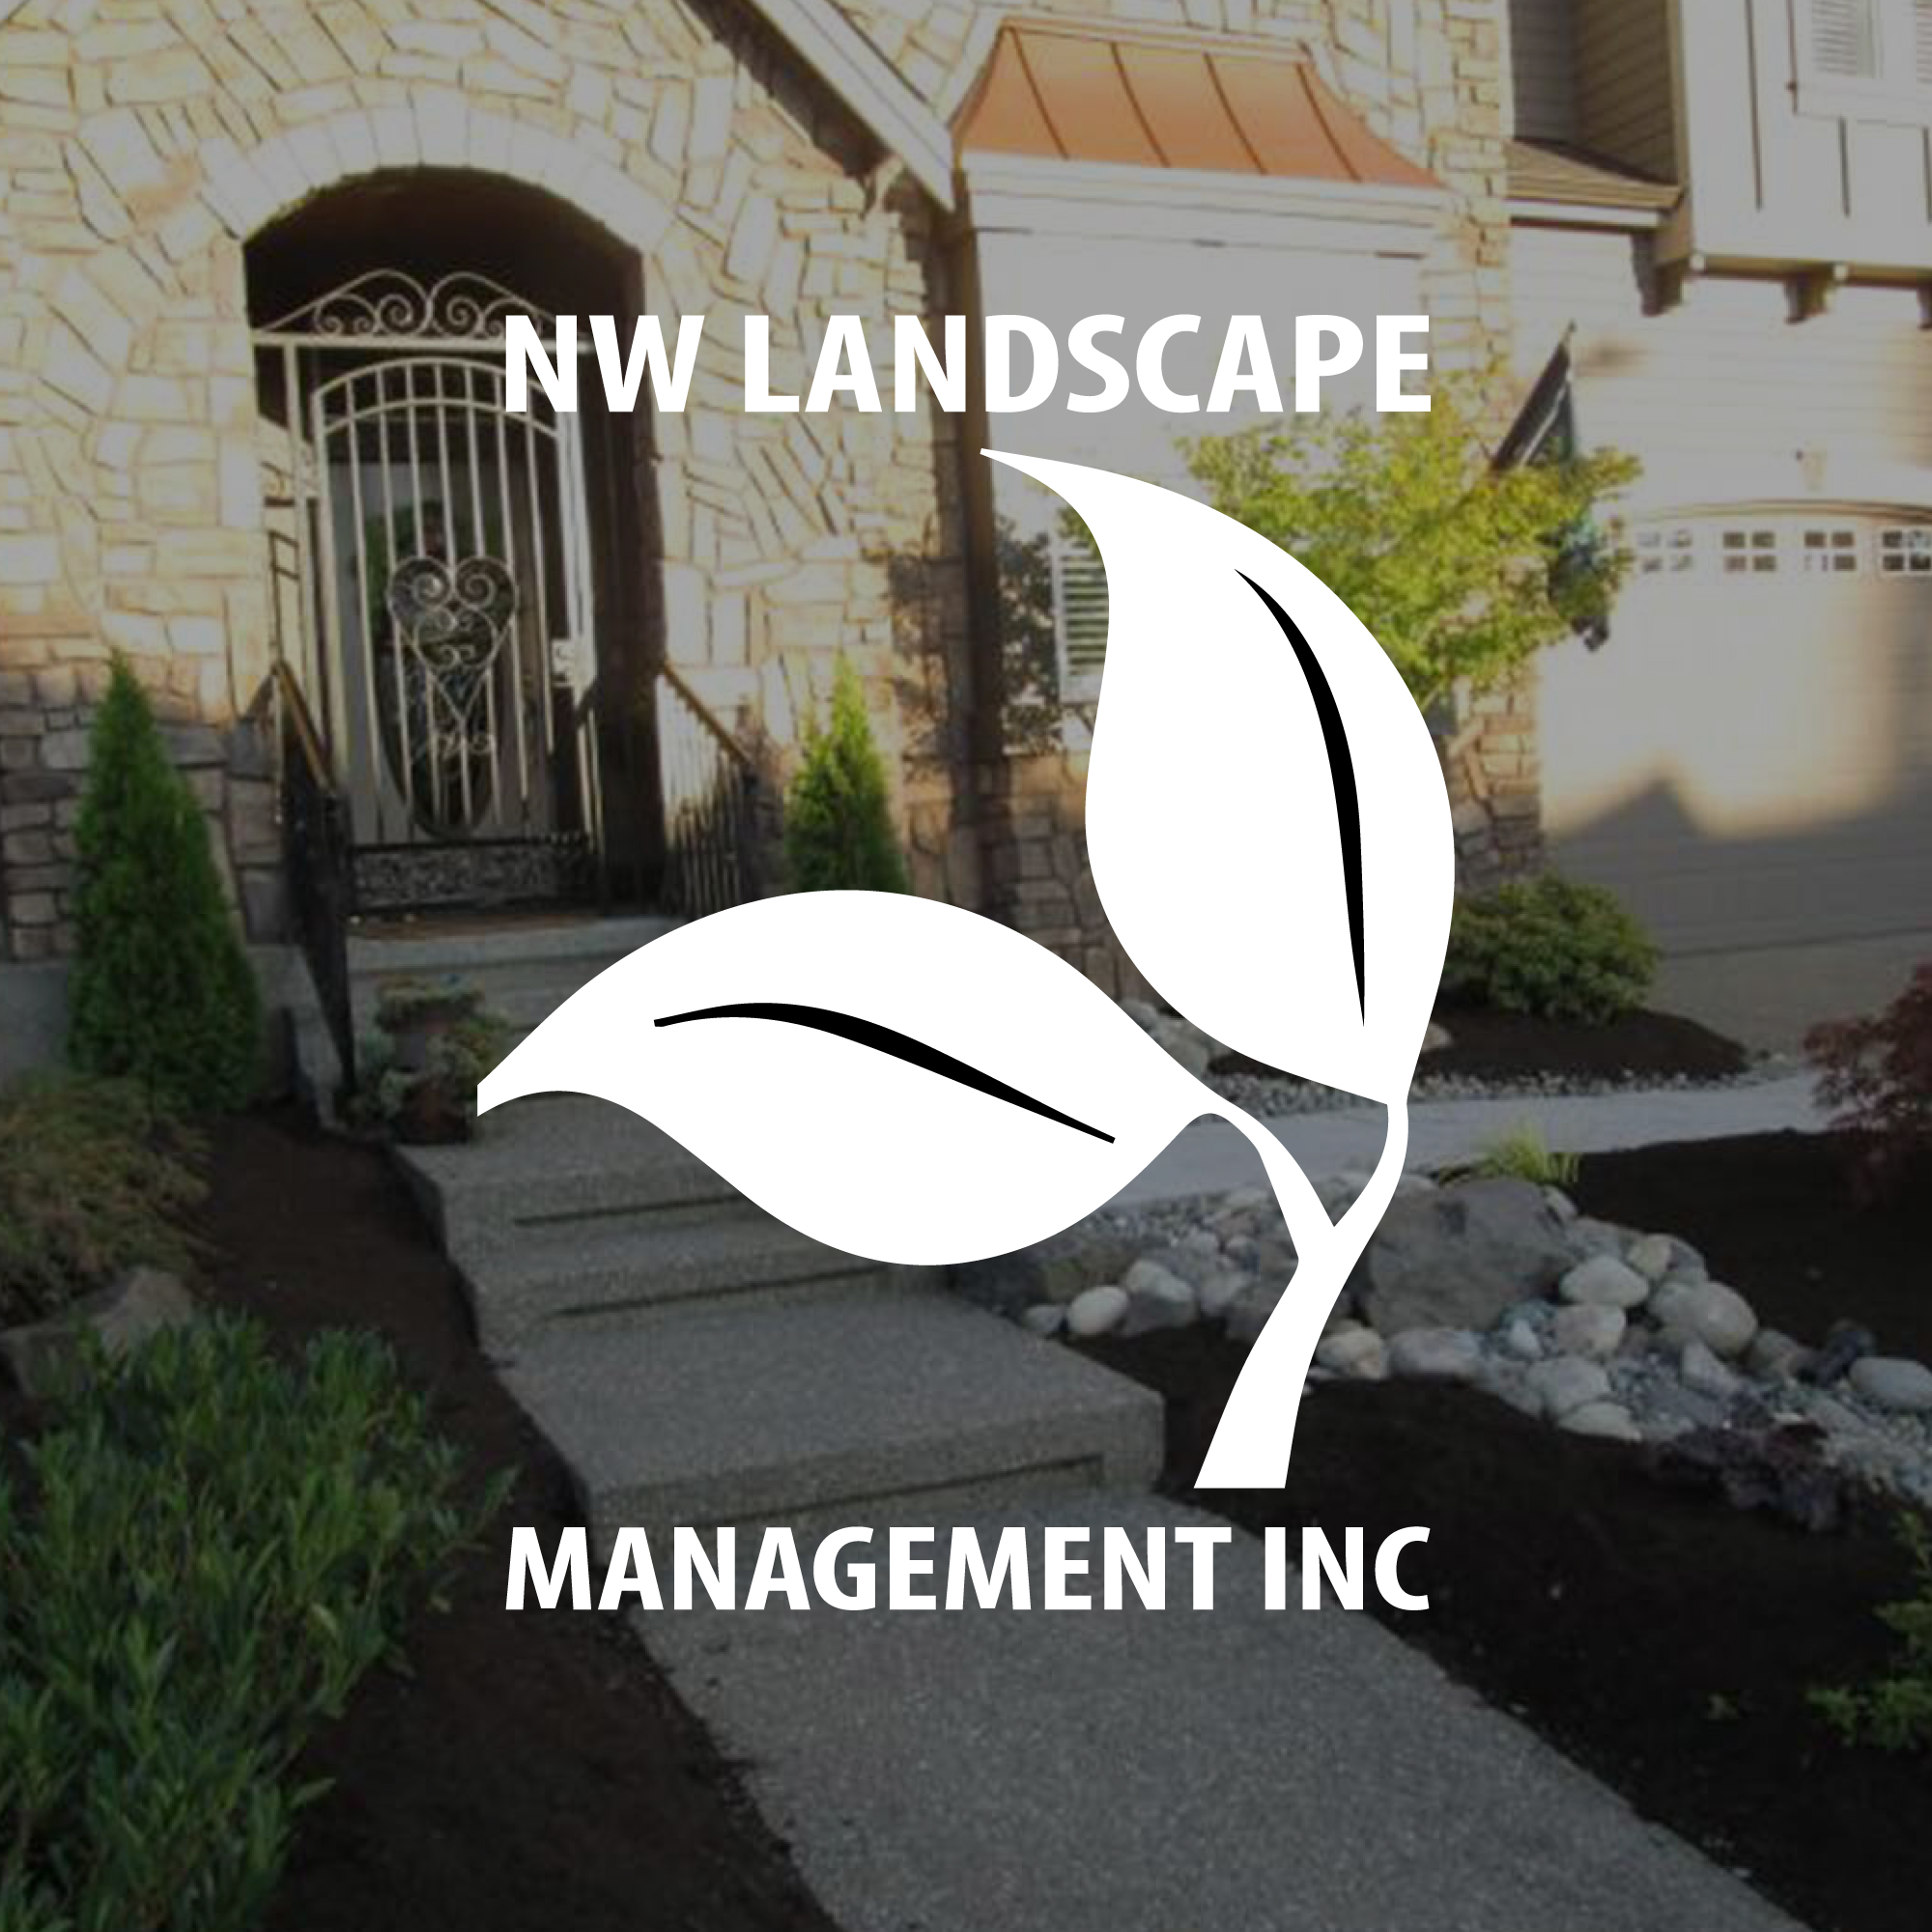 NW Landscape Management Inc